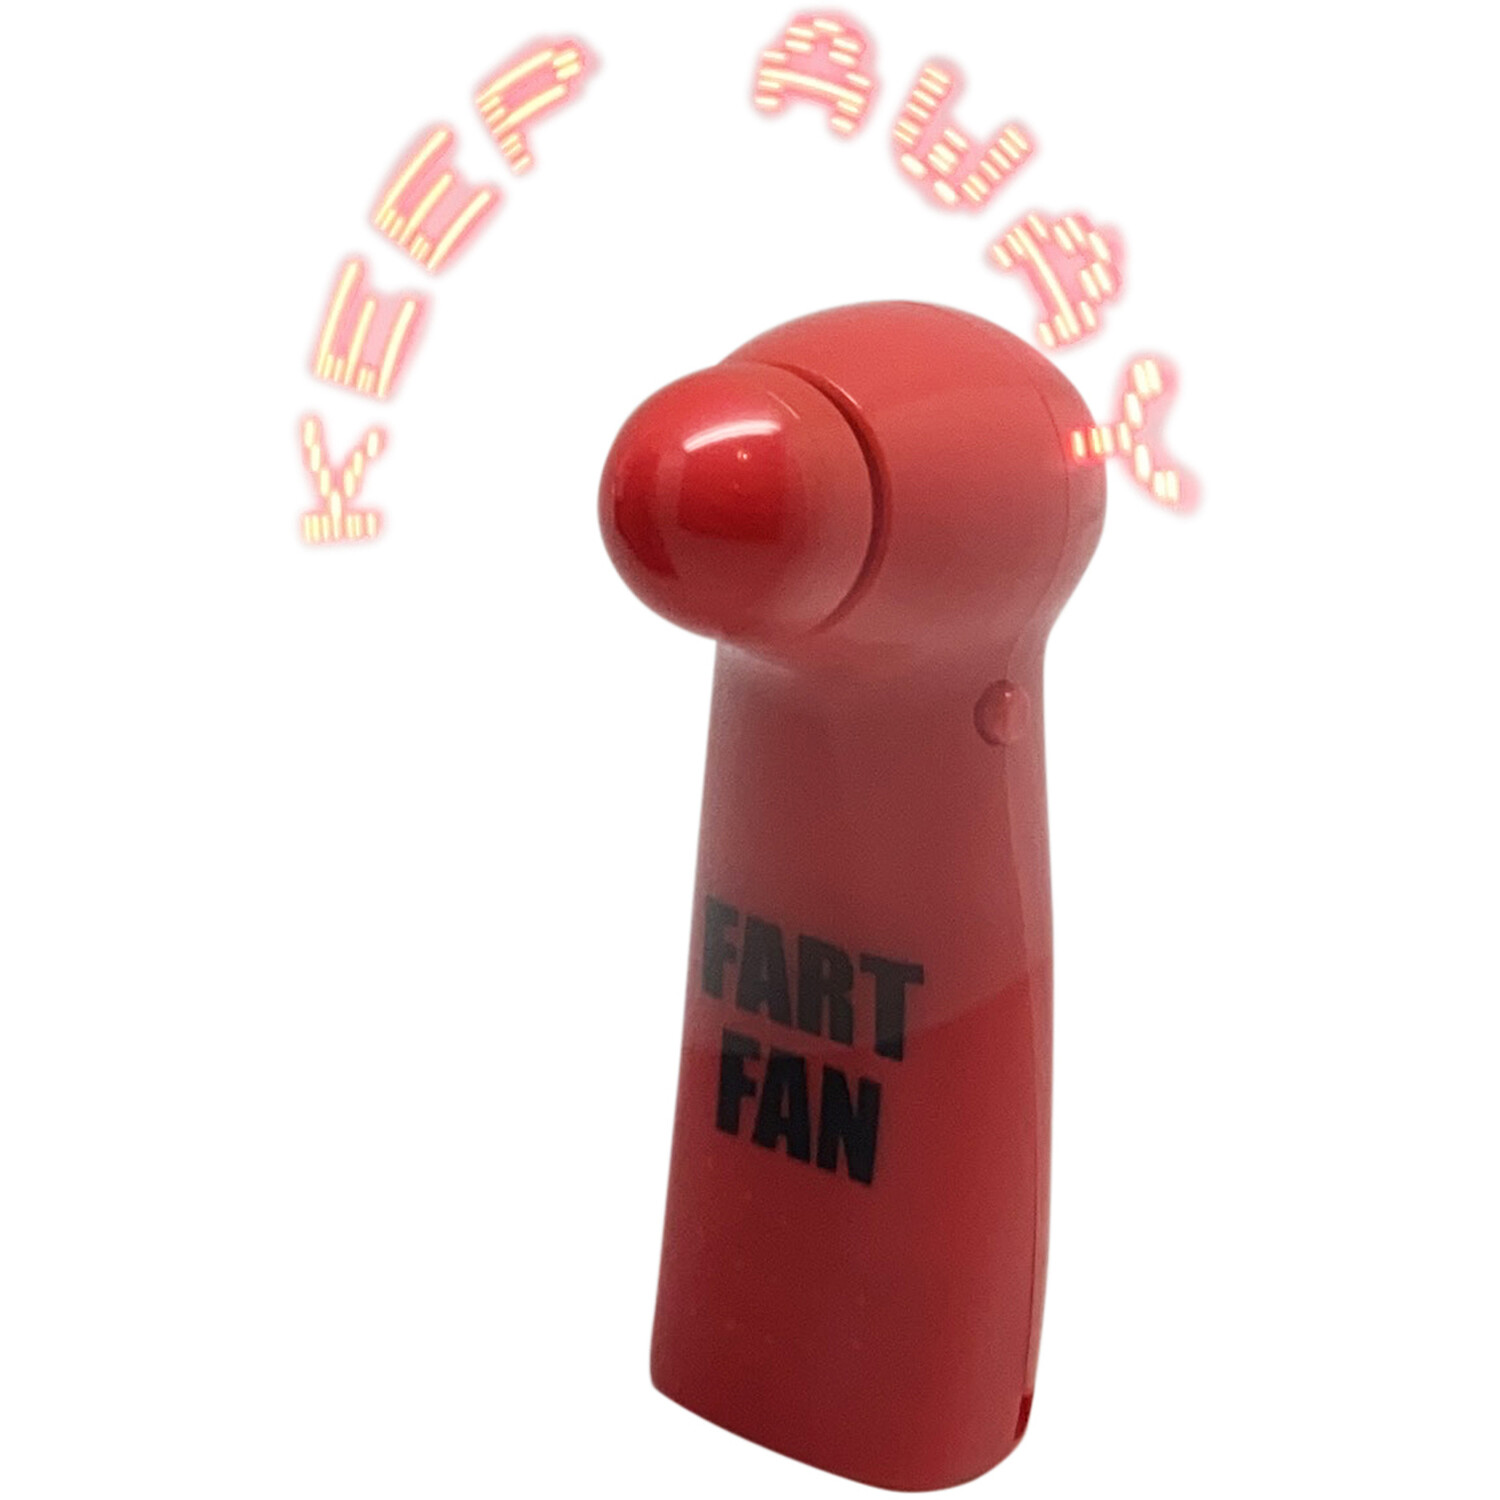 Fart Fan Image 3